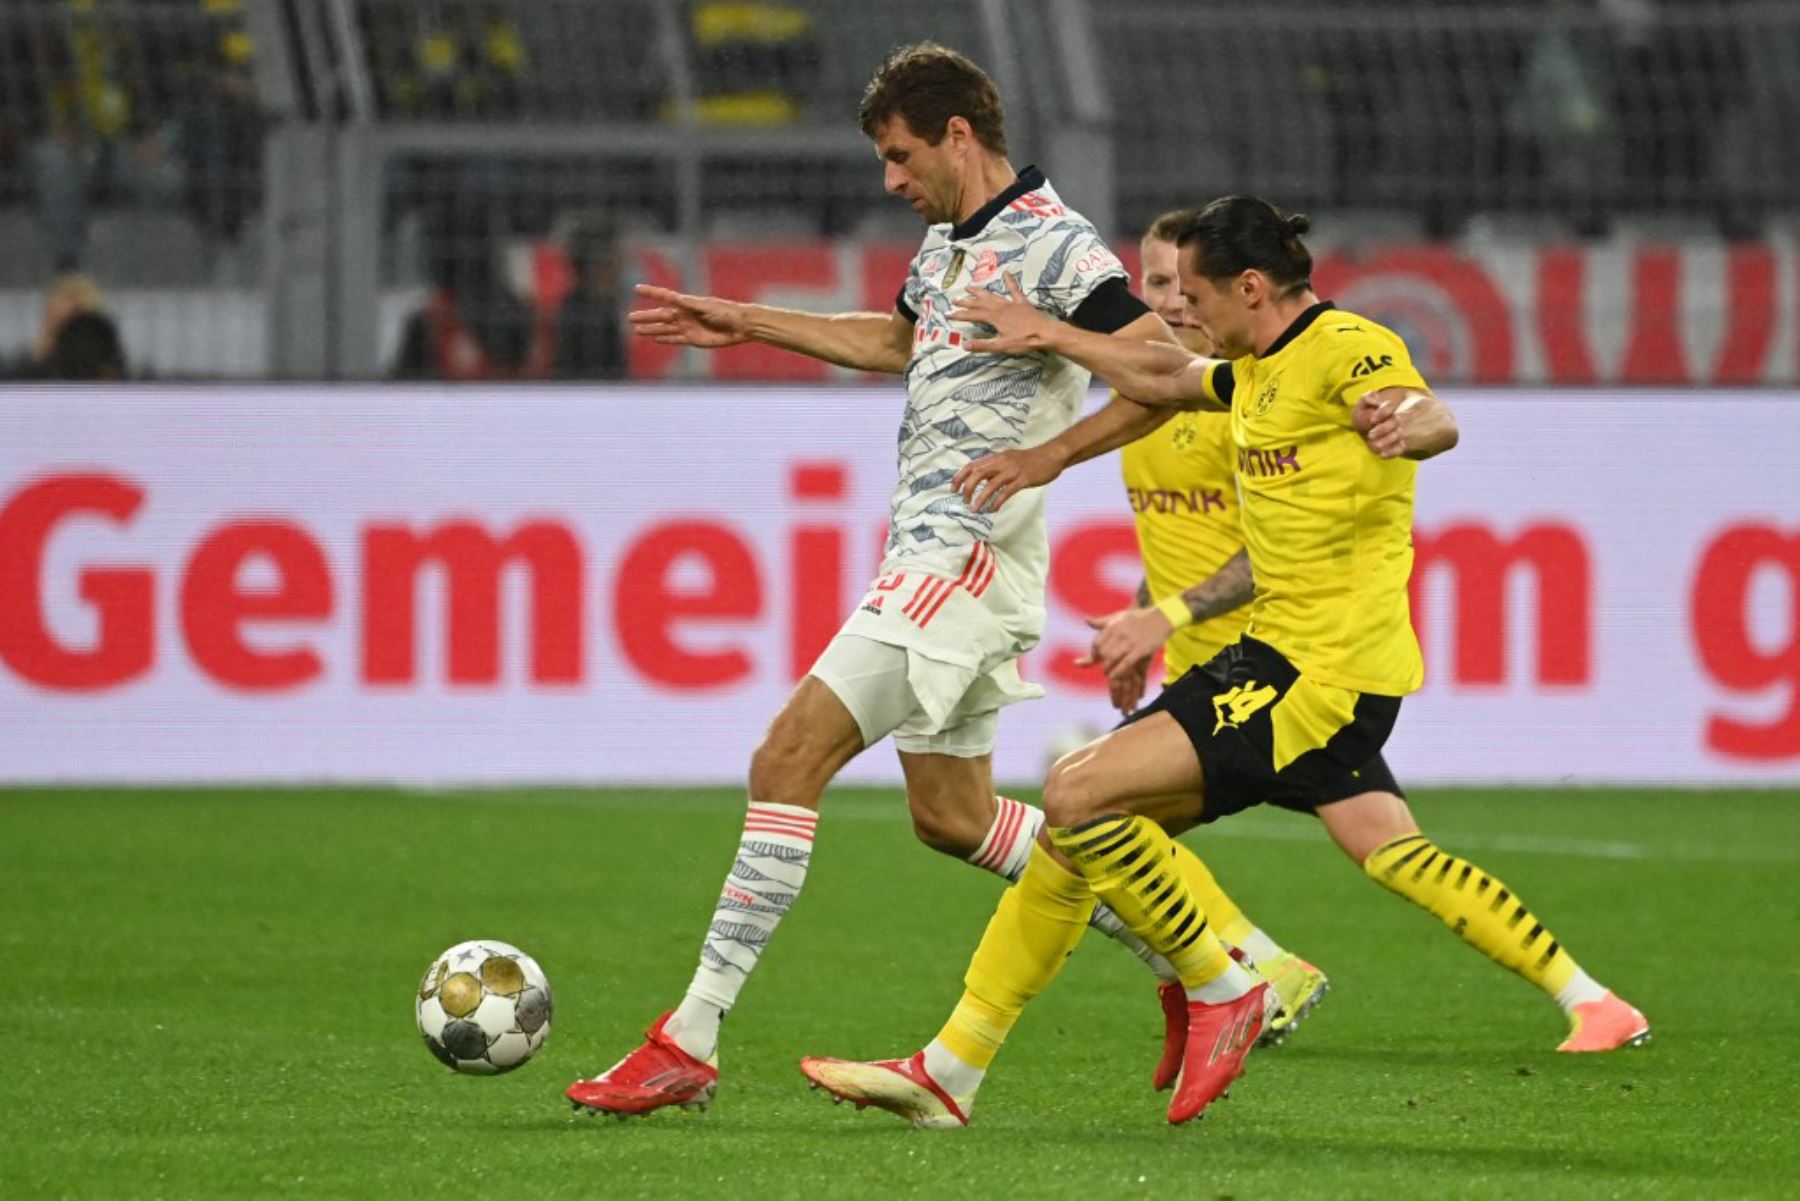 El delantero alemán del Bayern Munich Thomas Mueller (L) y el defensor alemán del Dortmund Nico Schulz disputan el balón durante el partido de fútbol de la Supercopa de Alemania BVB Borussia Dortmund vs FC Bayern Munich en Dortmun.

Foto: AFP